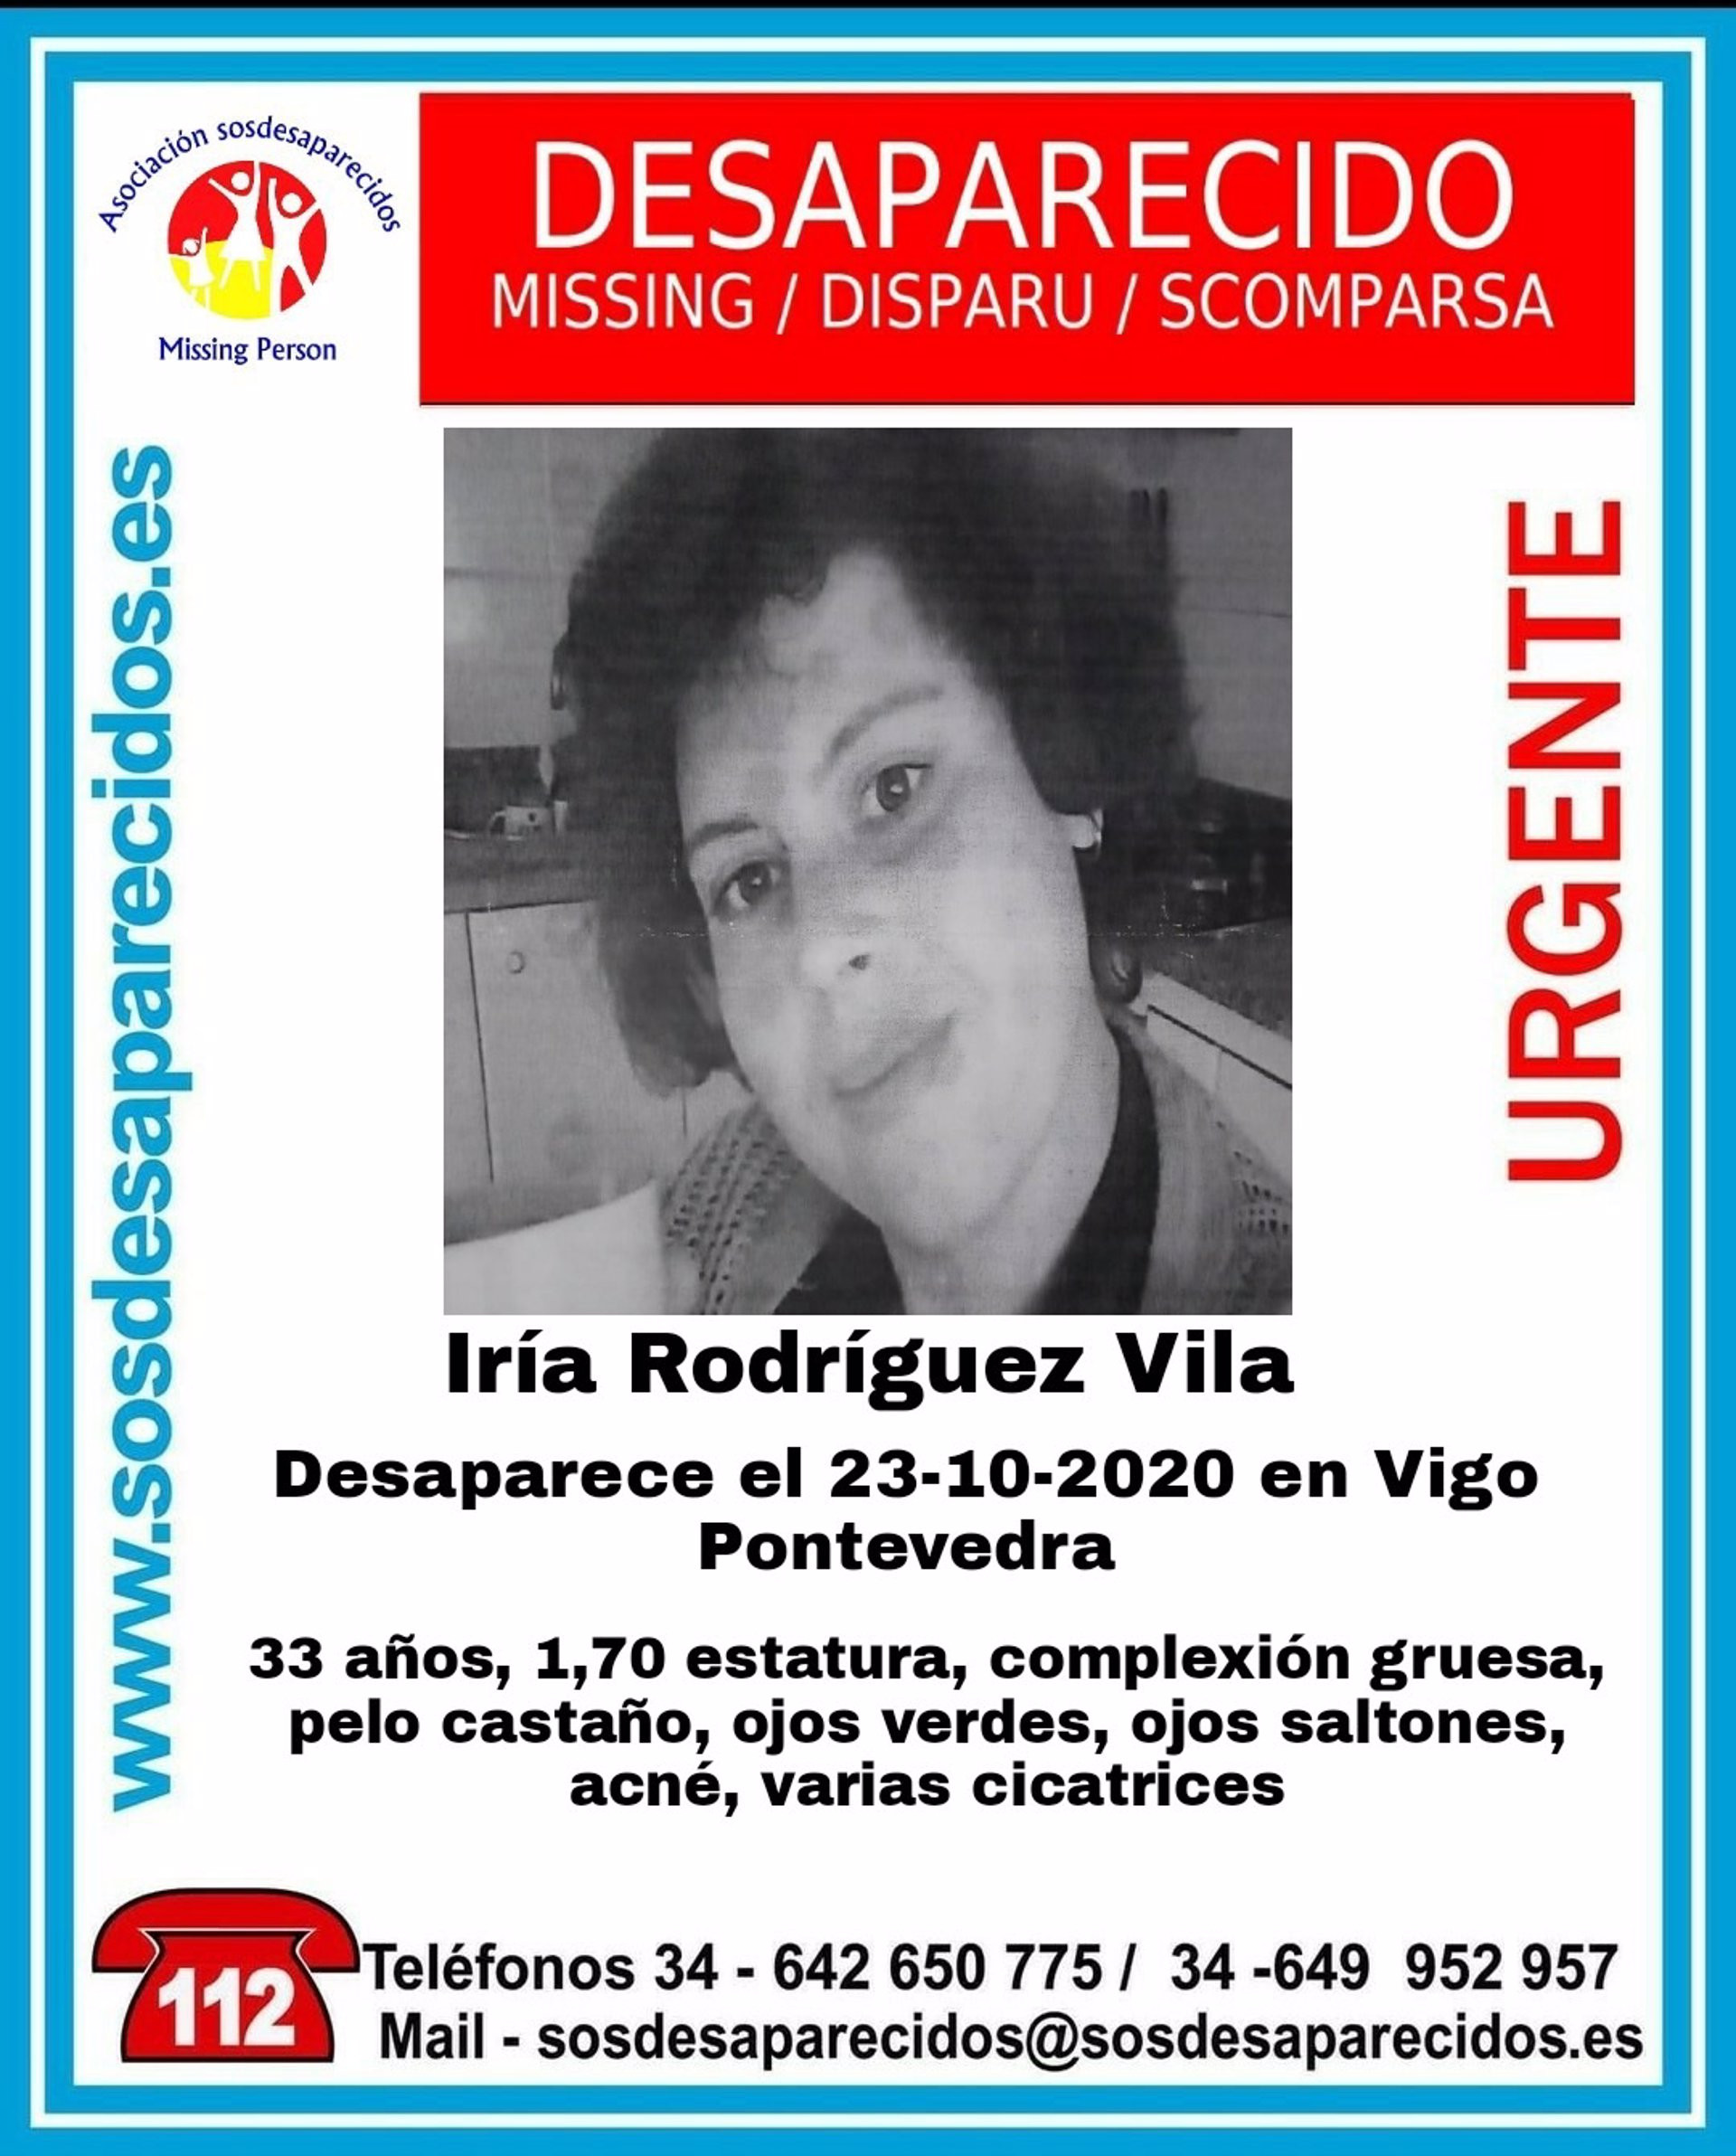 30/10/2020 Iria Rodríguez Vila, mujer de 33 años desaparecida en Vigo.
SOCIEDAD ESPAÑA EUROPA GALICIA AUTONOMÍAS
SOS DESAPARECIDOS